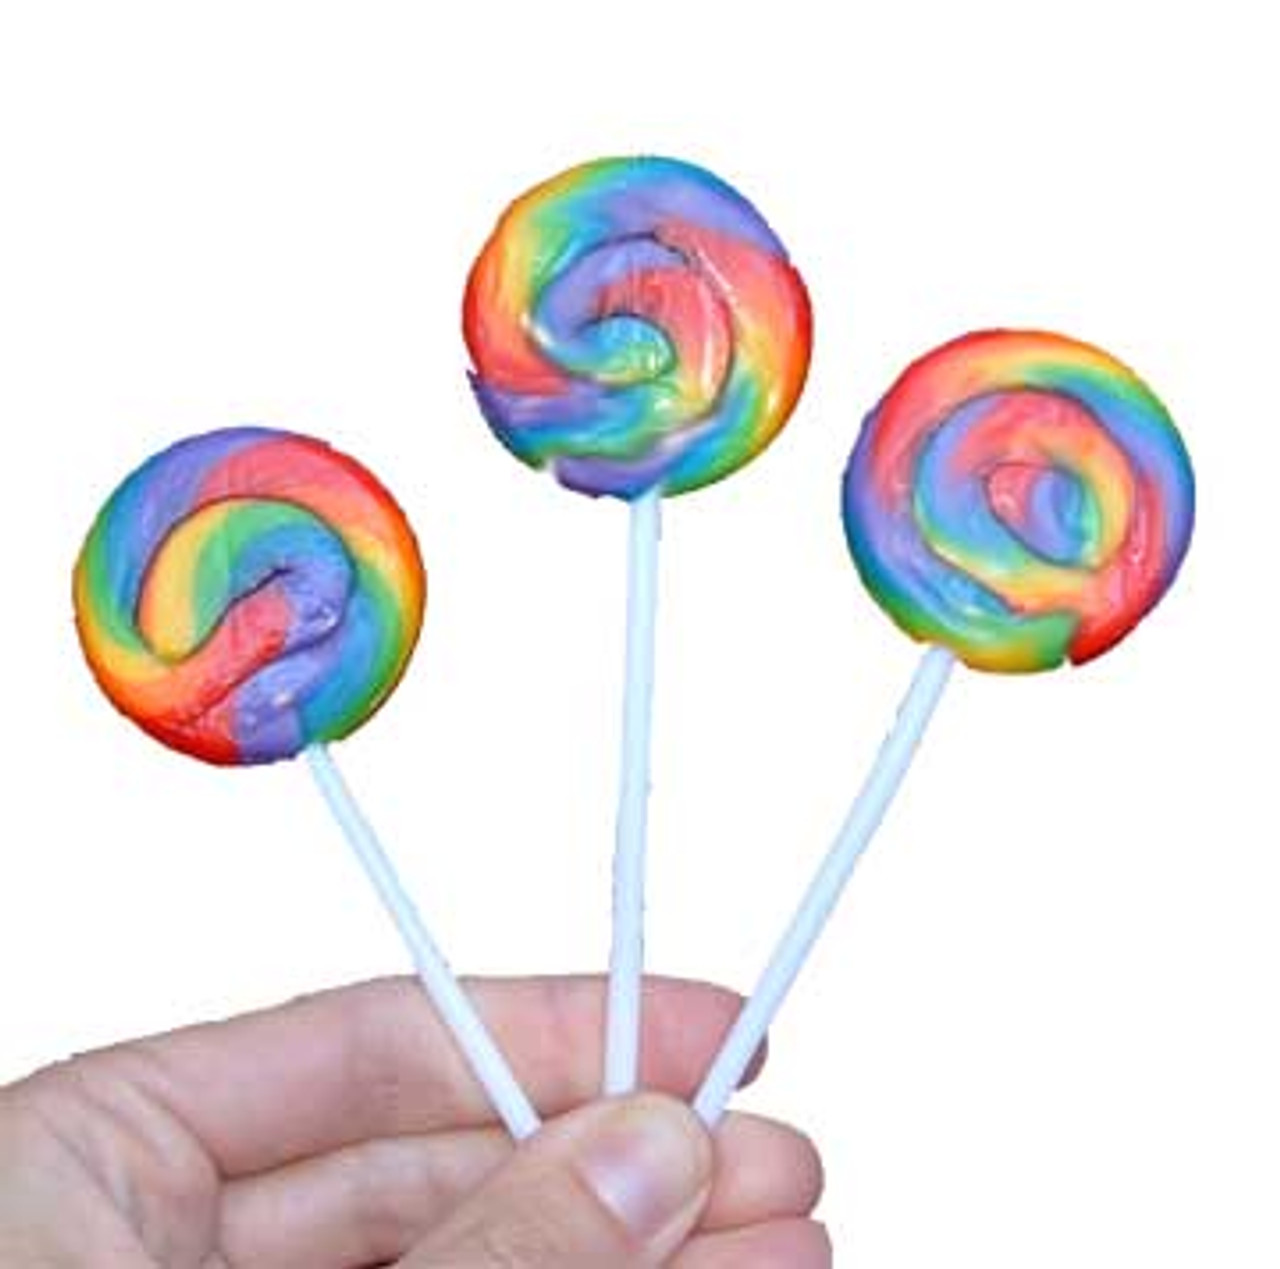 mini swirl lollipops